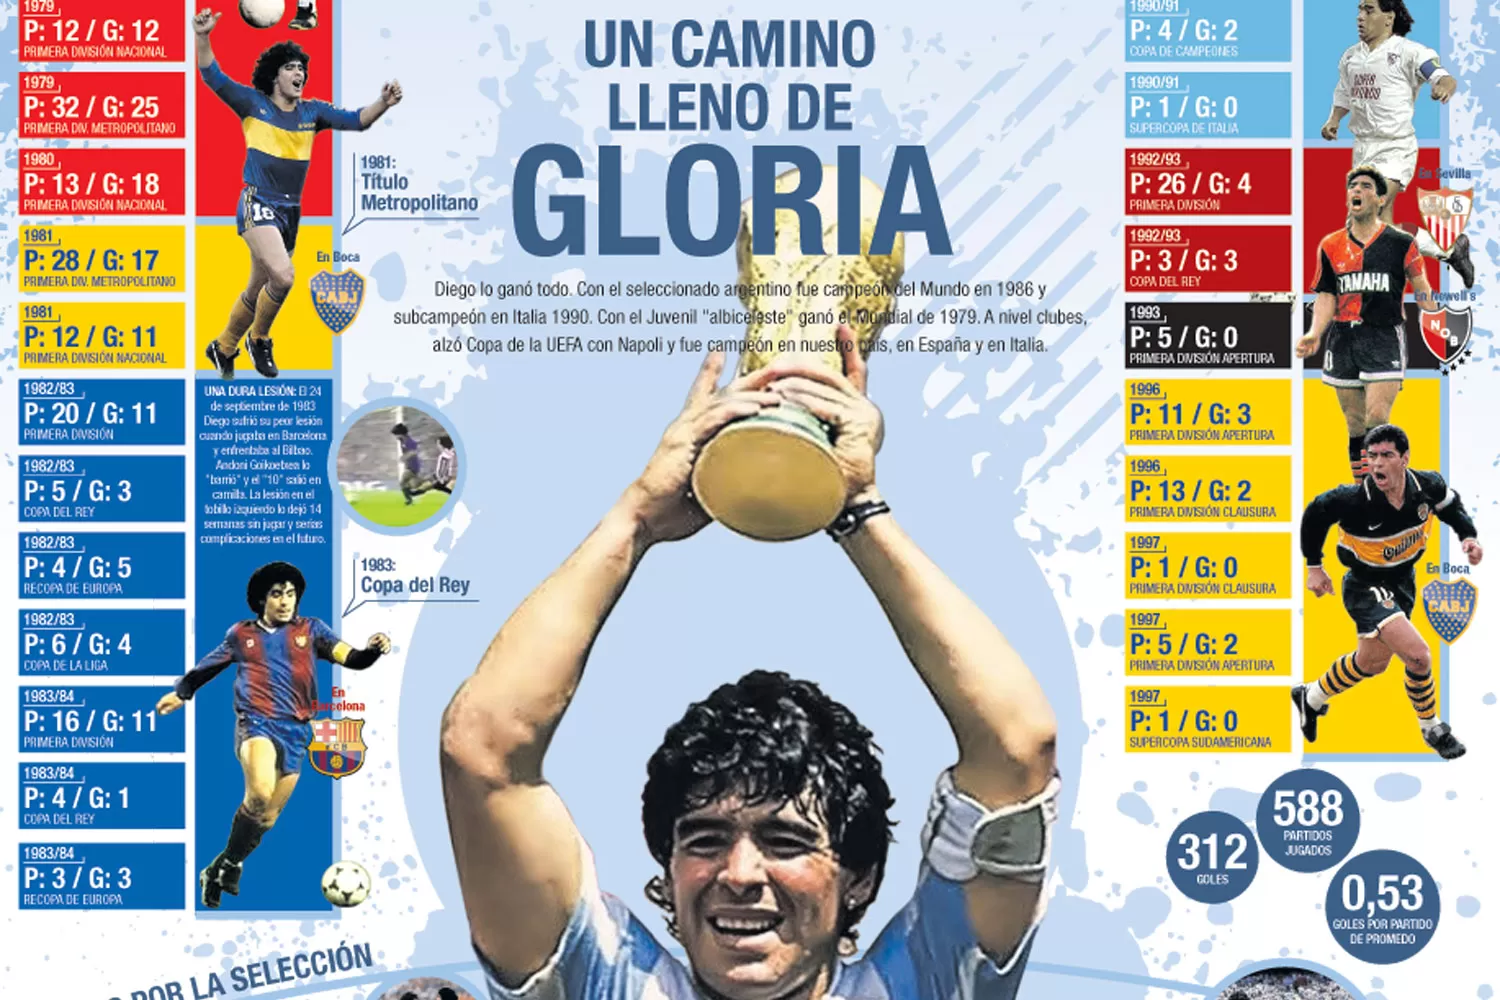 Maradona y un camino lleno de gloria